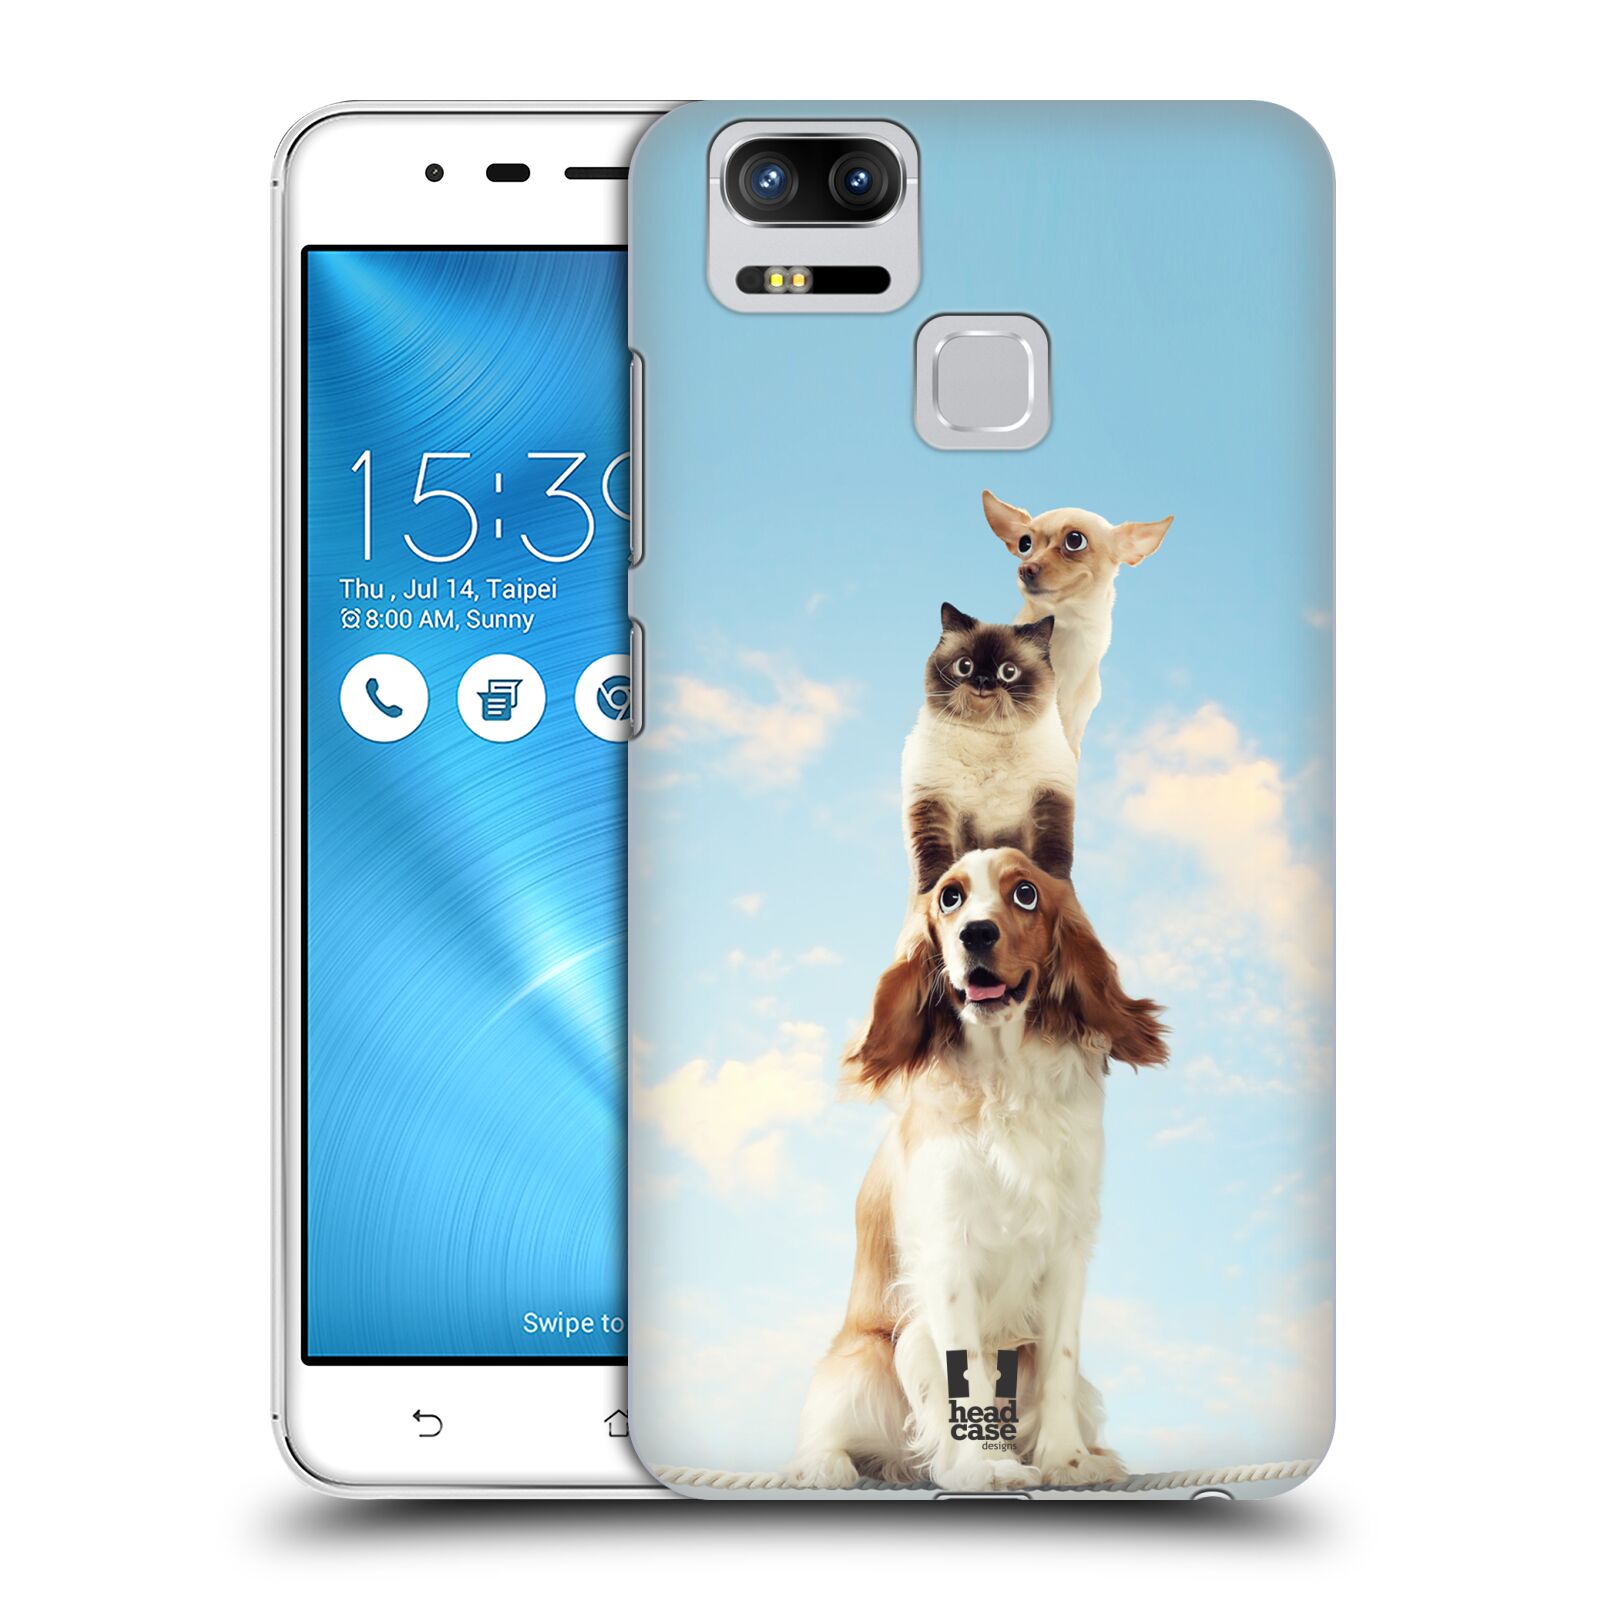 HEAD CASE plastový obal na mobil Asus Zenfone 3 Zoom ZE553KL vzor Legrační zvířátka zvířecí totem